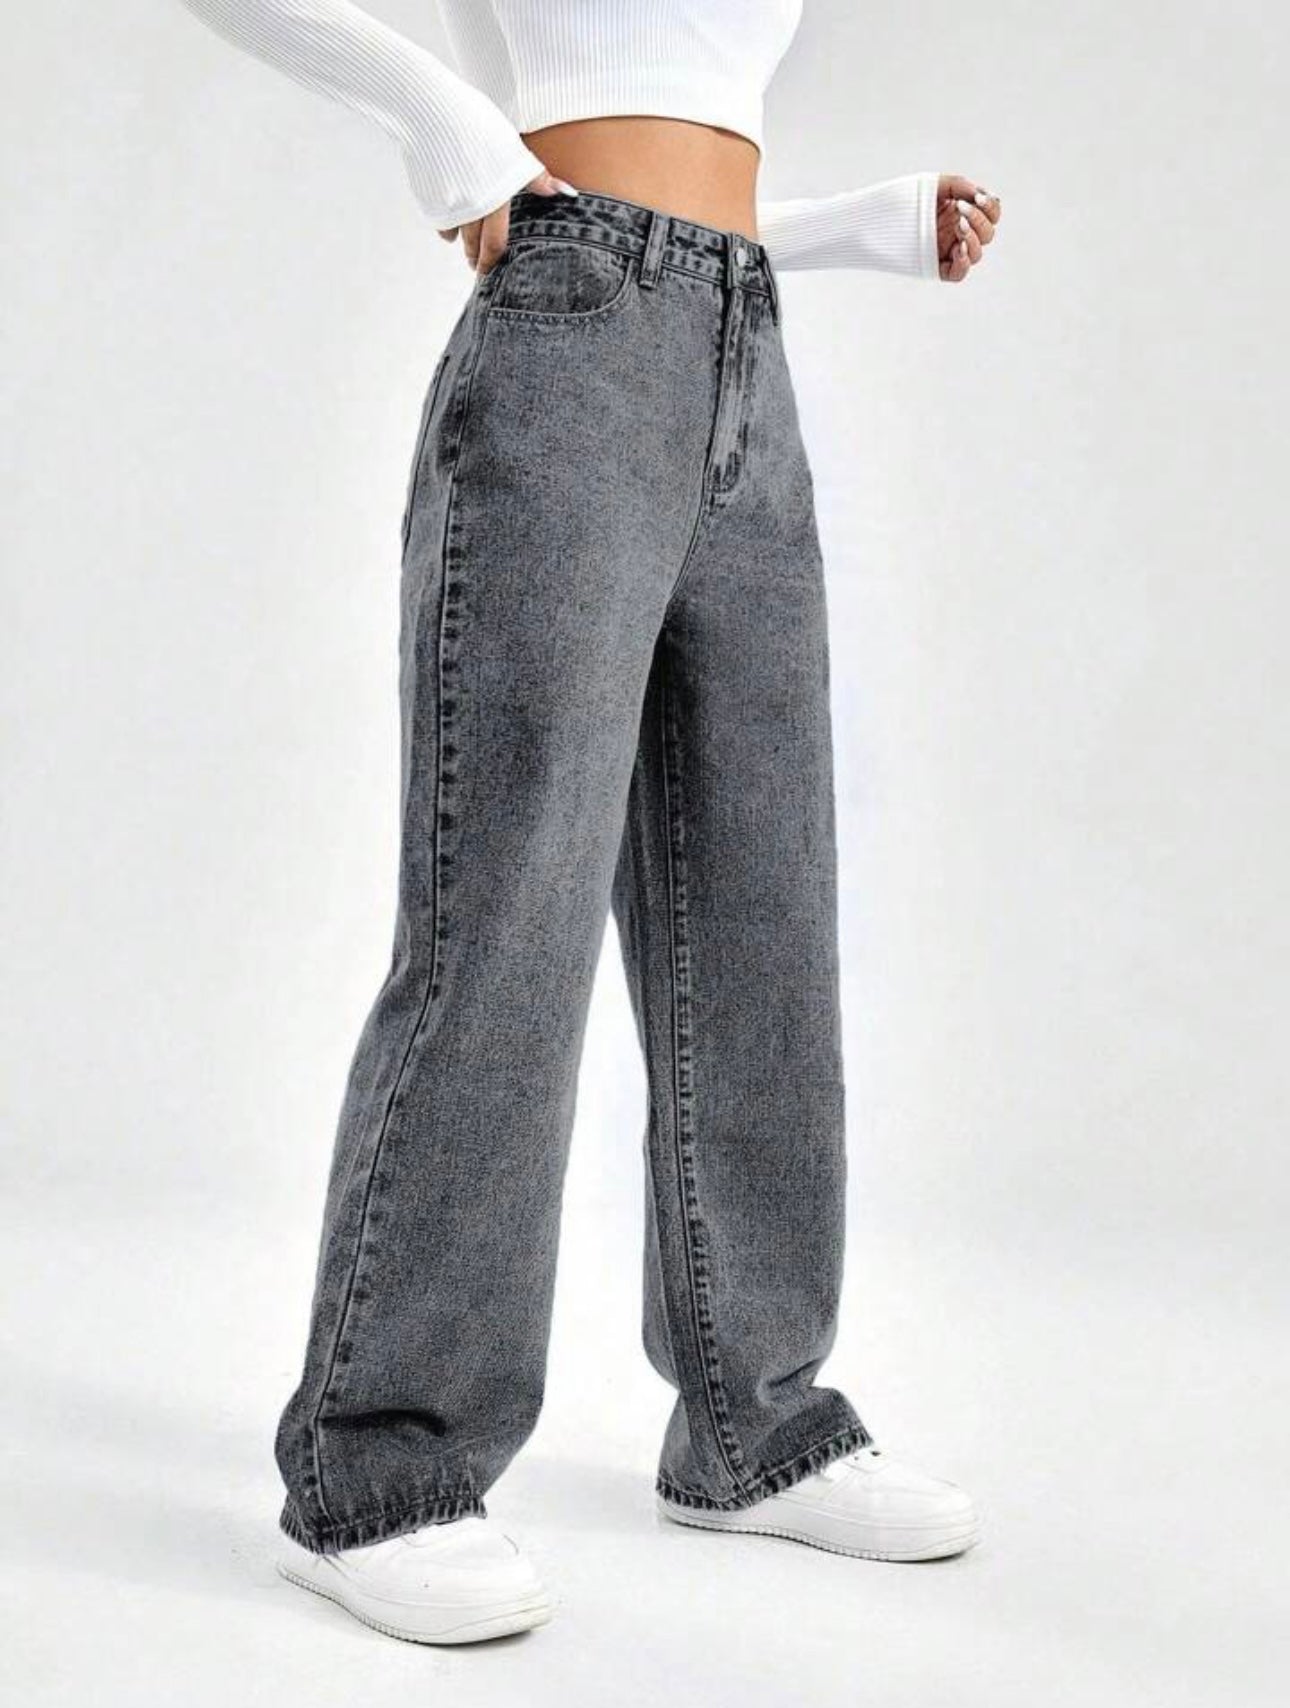 Charcoal Grey Wide Leg Bell Bottom High Waist Jeans For Women